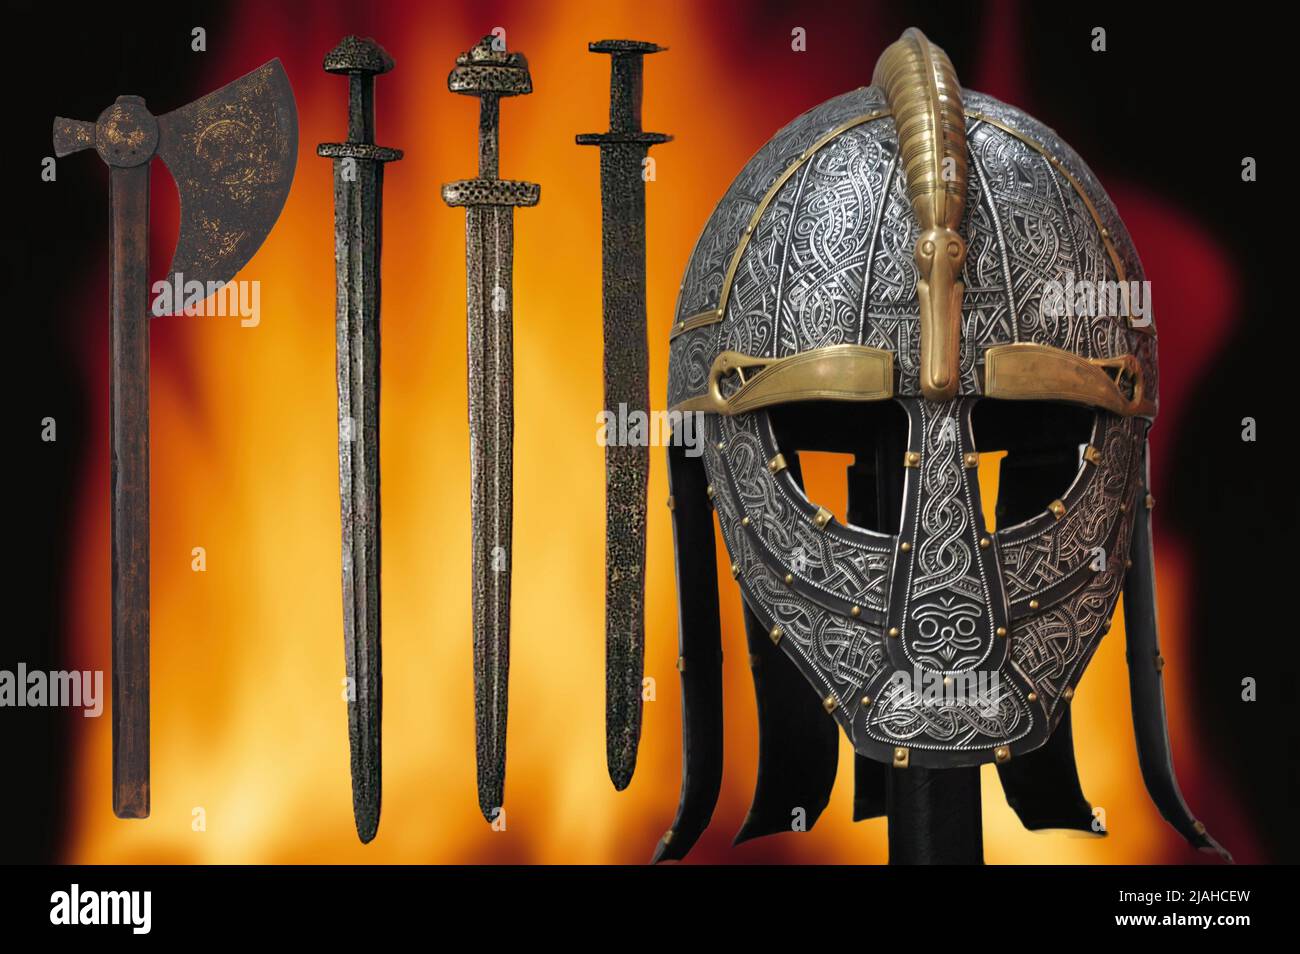 Casque, épées et haches de l'ancien peuple viking Banque D'Images